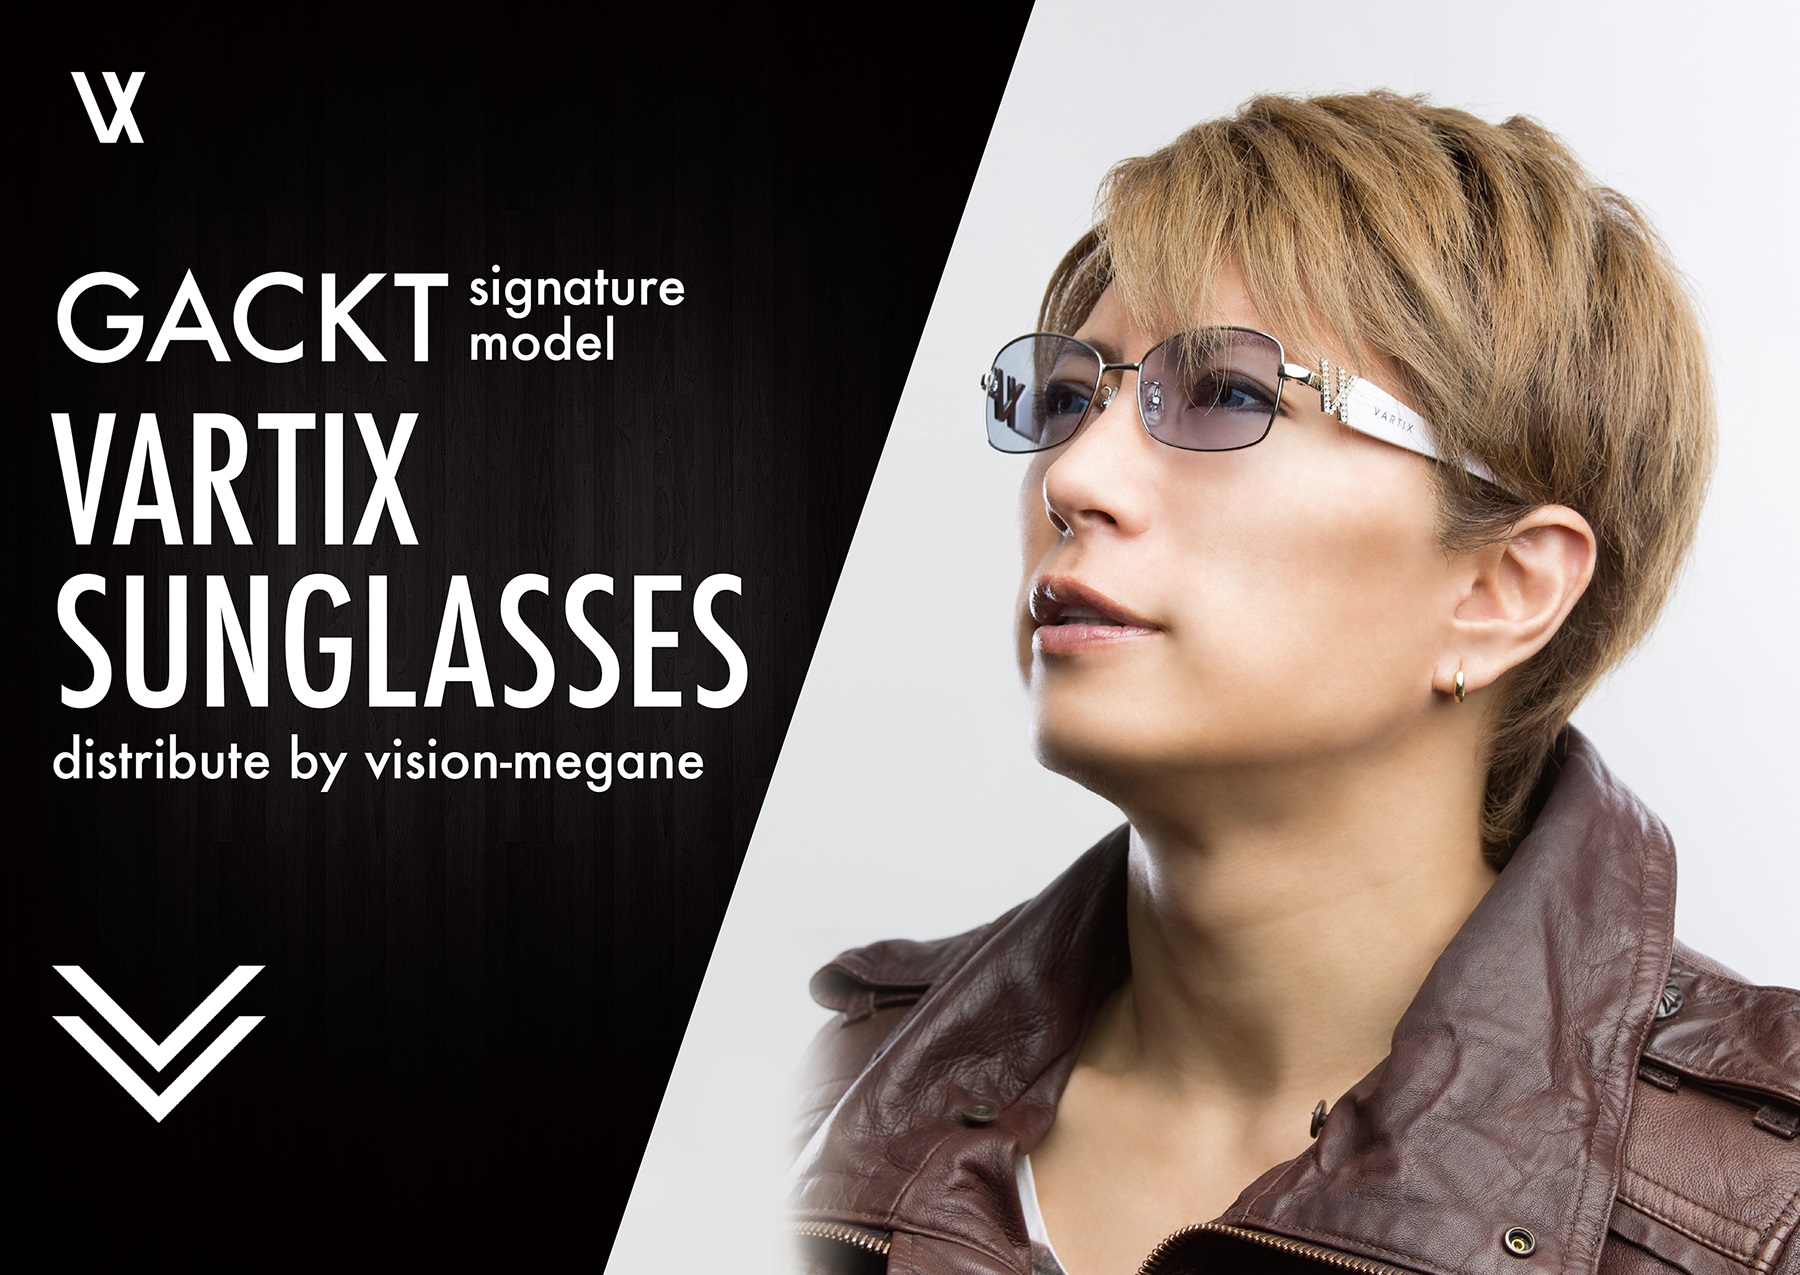 ビジョンメガネ Gacktさんとvartixとのコラボサングラス独占販売決定 Gackt Vartix Sunglasses 2016年3月18日 木 インターネット 店頭同時発売開始 株式会社ビジョンメガネのプレスリリース